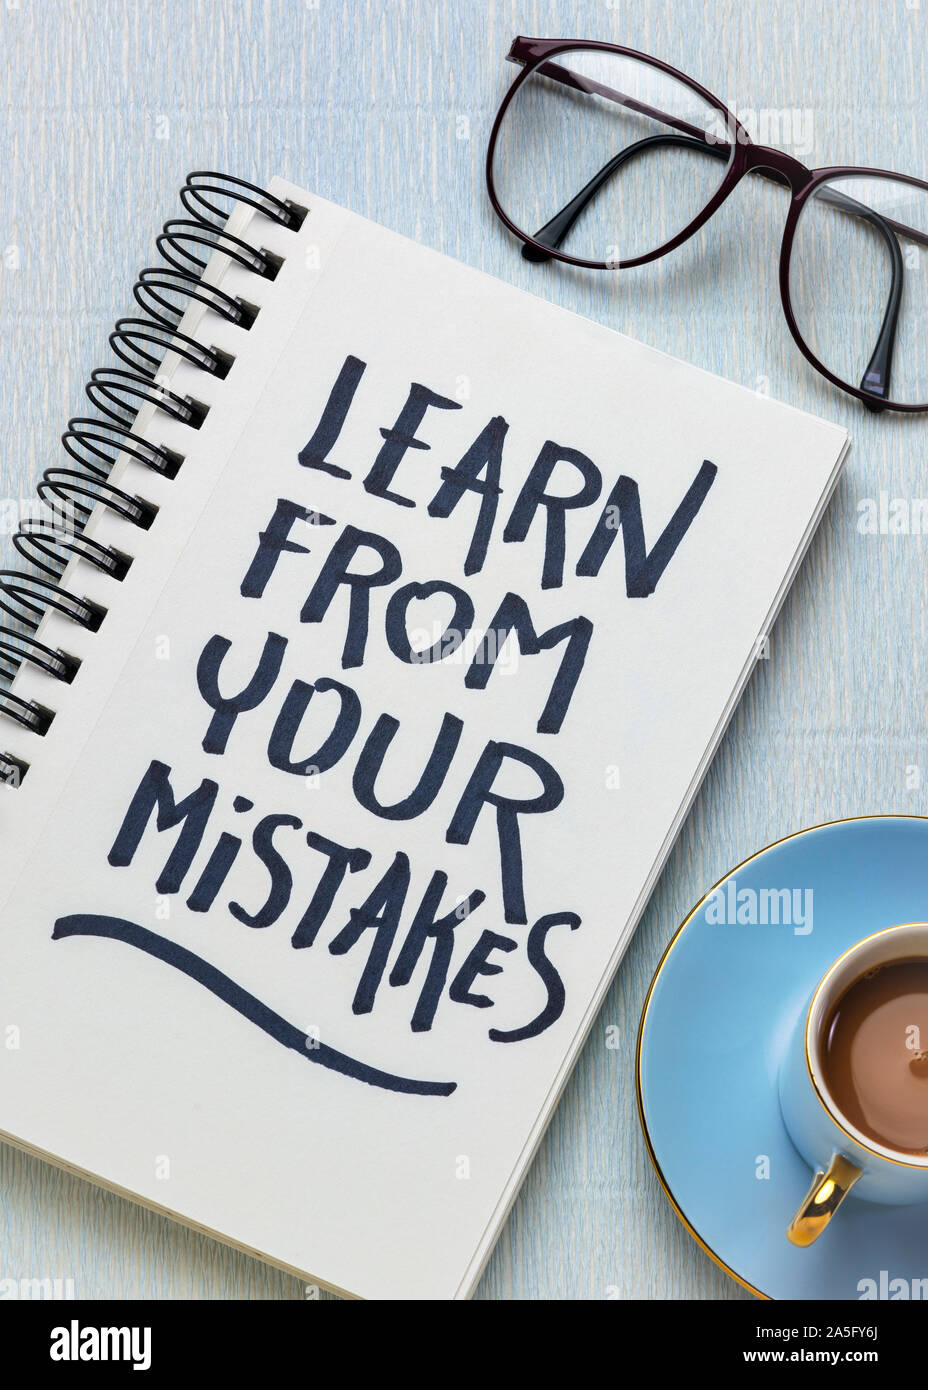 Erinnerung aus ihren Fehlern lernen - Handschrift in einem Skizzenbuch mit einer Tasse Kaffee, Lernen, Entschlossenheit und Ausdauer Konzept Stockfoto